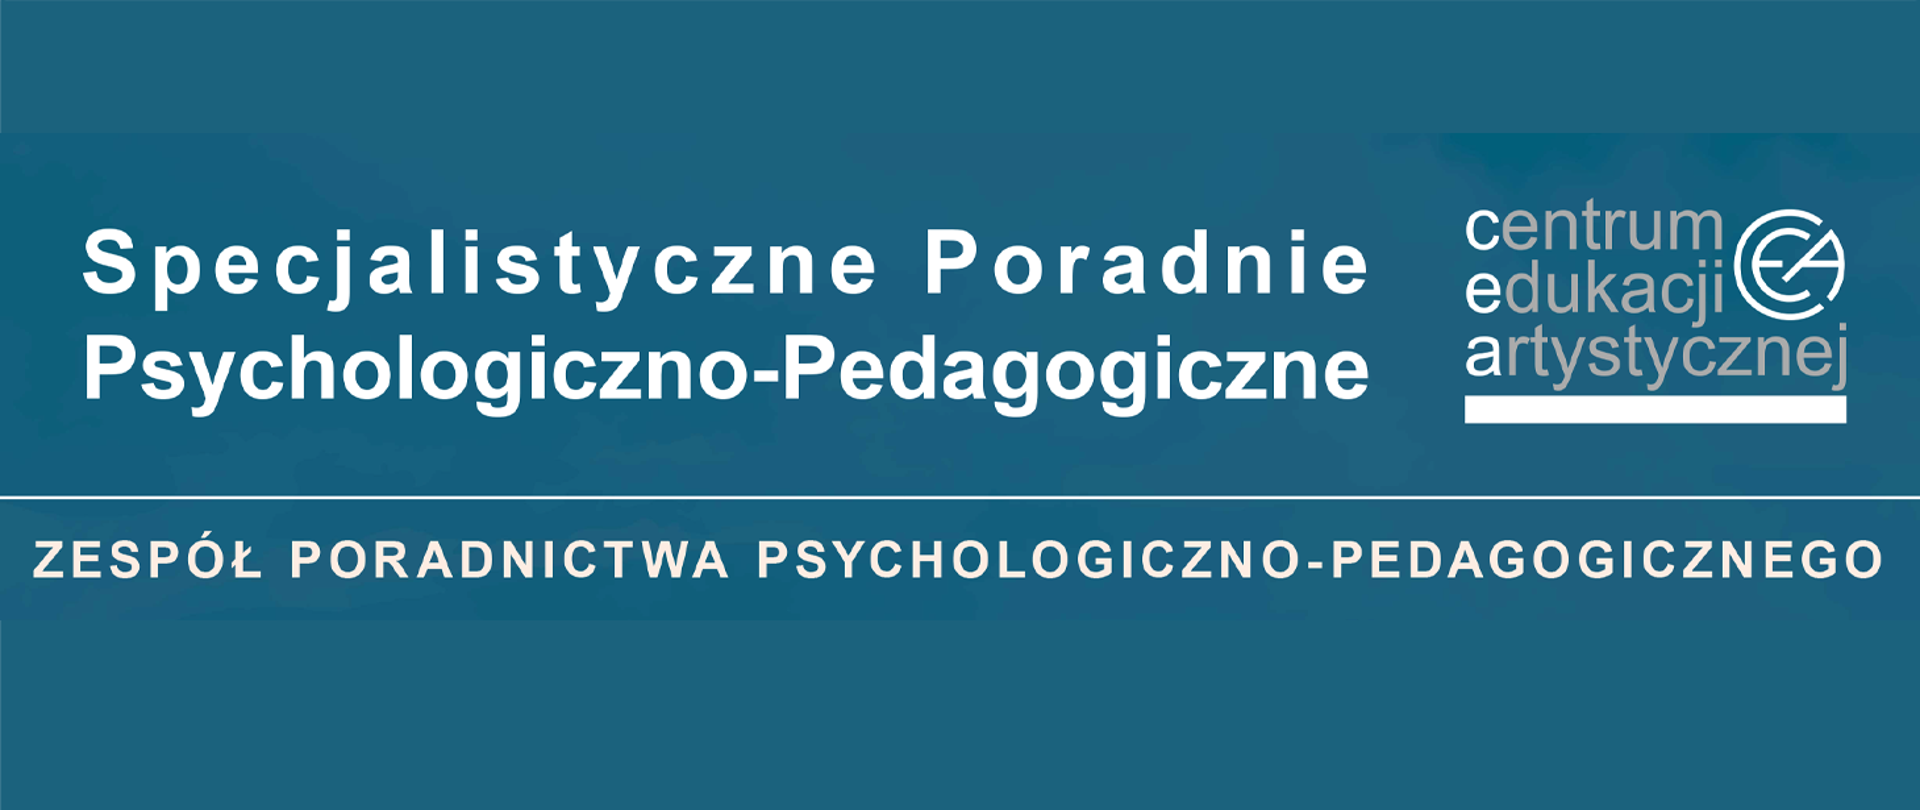 Na niebieskim tle, u góry napis o treści Specjalistyczne Poradnie Psychologiczno -Pedagogiczne, z prawej strony napisu logo Centrum Edukacji Artystycznej, poniżej napis o treści zespół, poradnictwa psychologiczno - pedagogicznego.